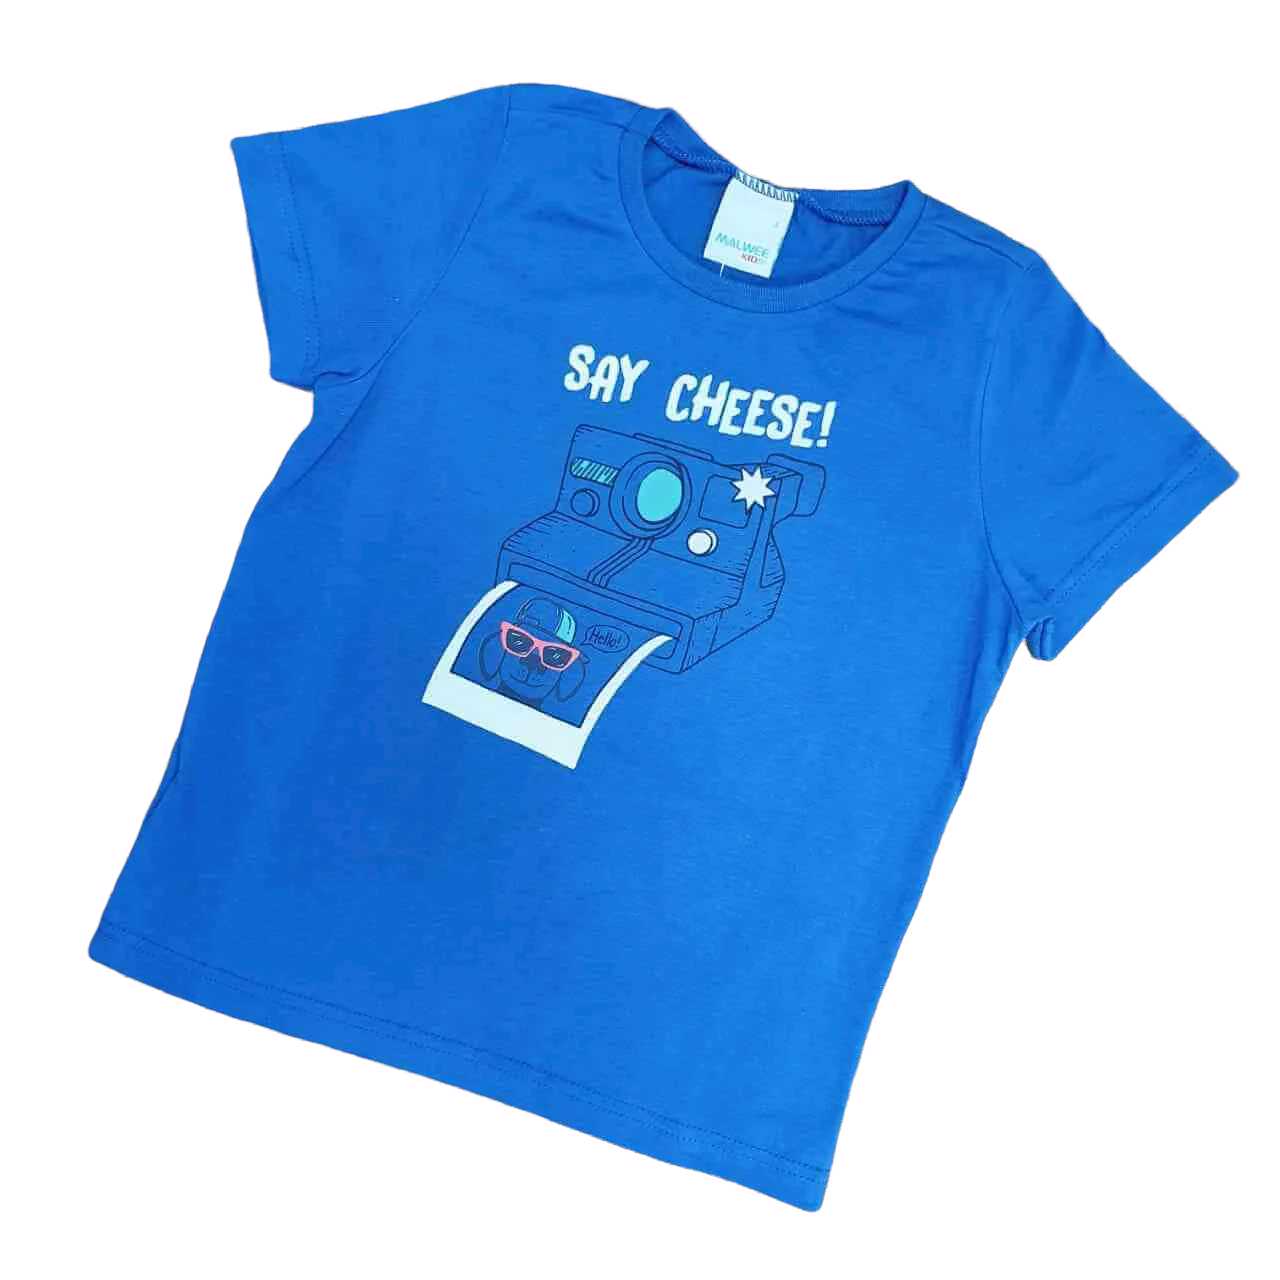 Camiseta Say Cheese Infantil - Lojinha da Vivi